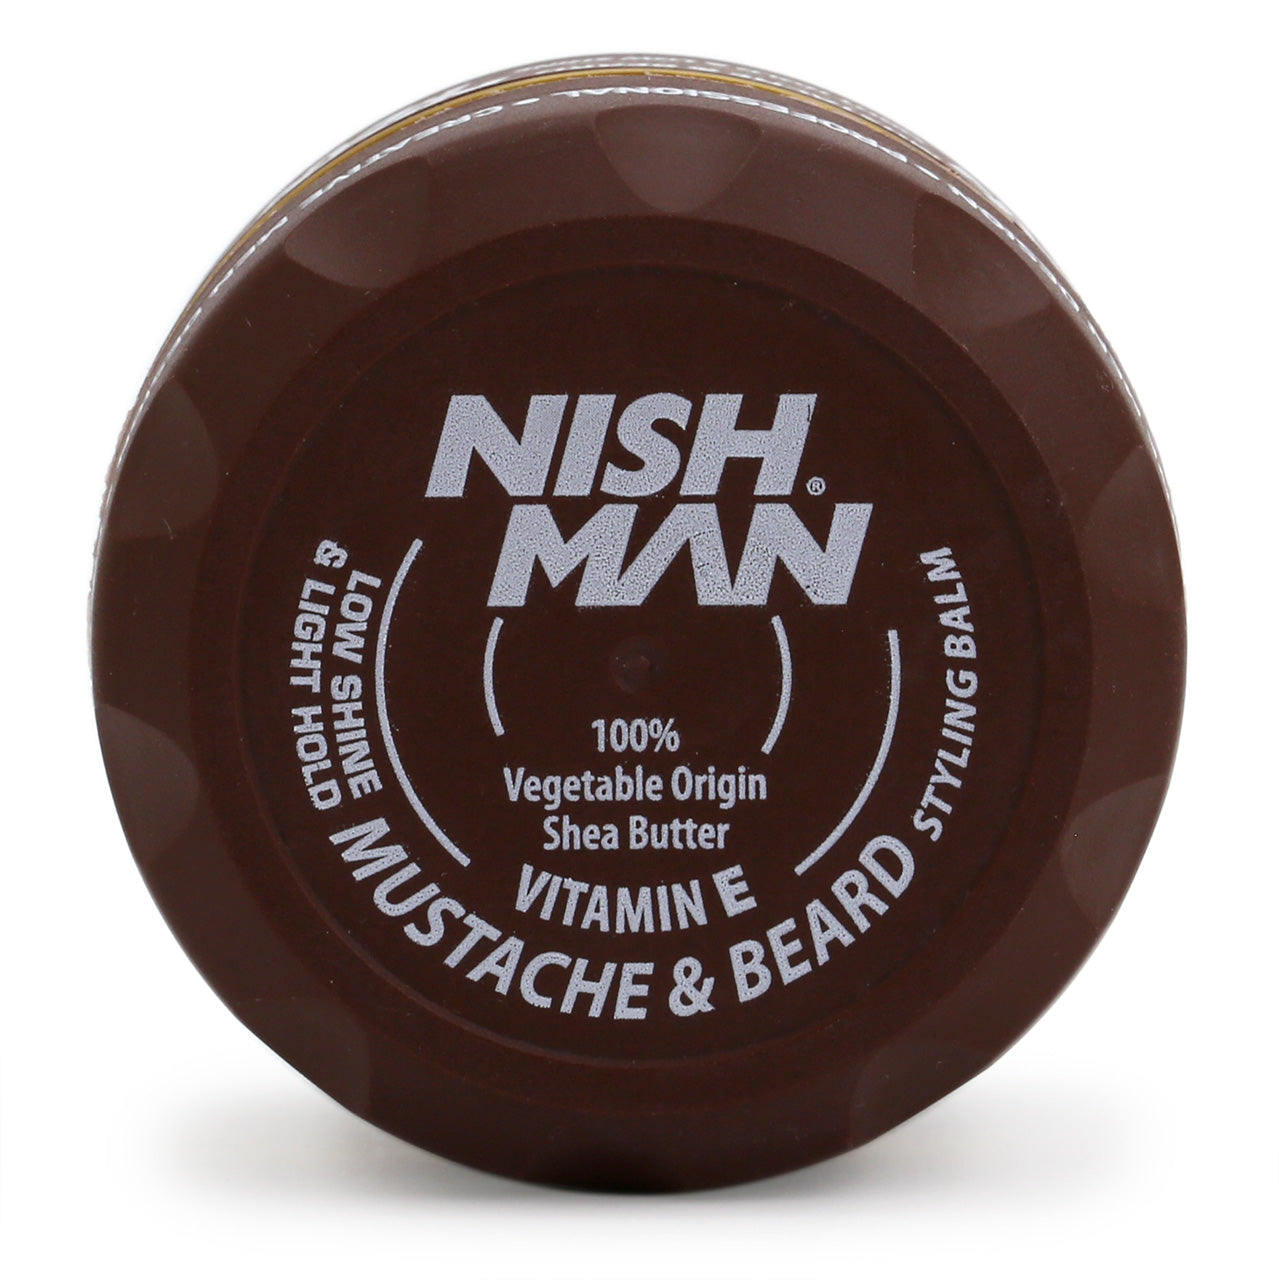 NishMan Mustache & Beard Balm 100ml tub, top view